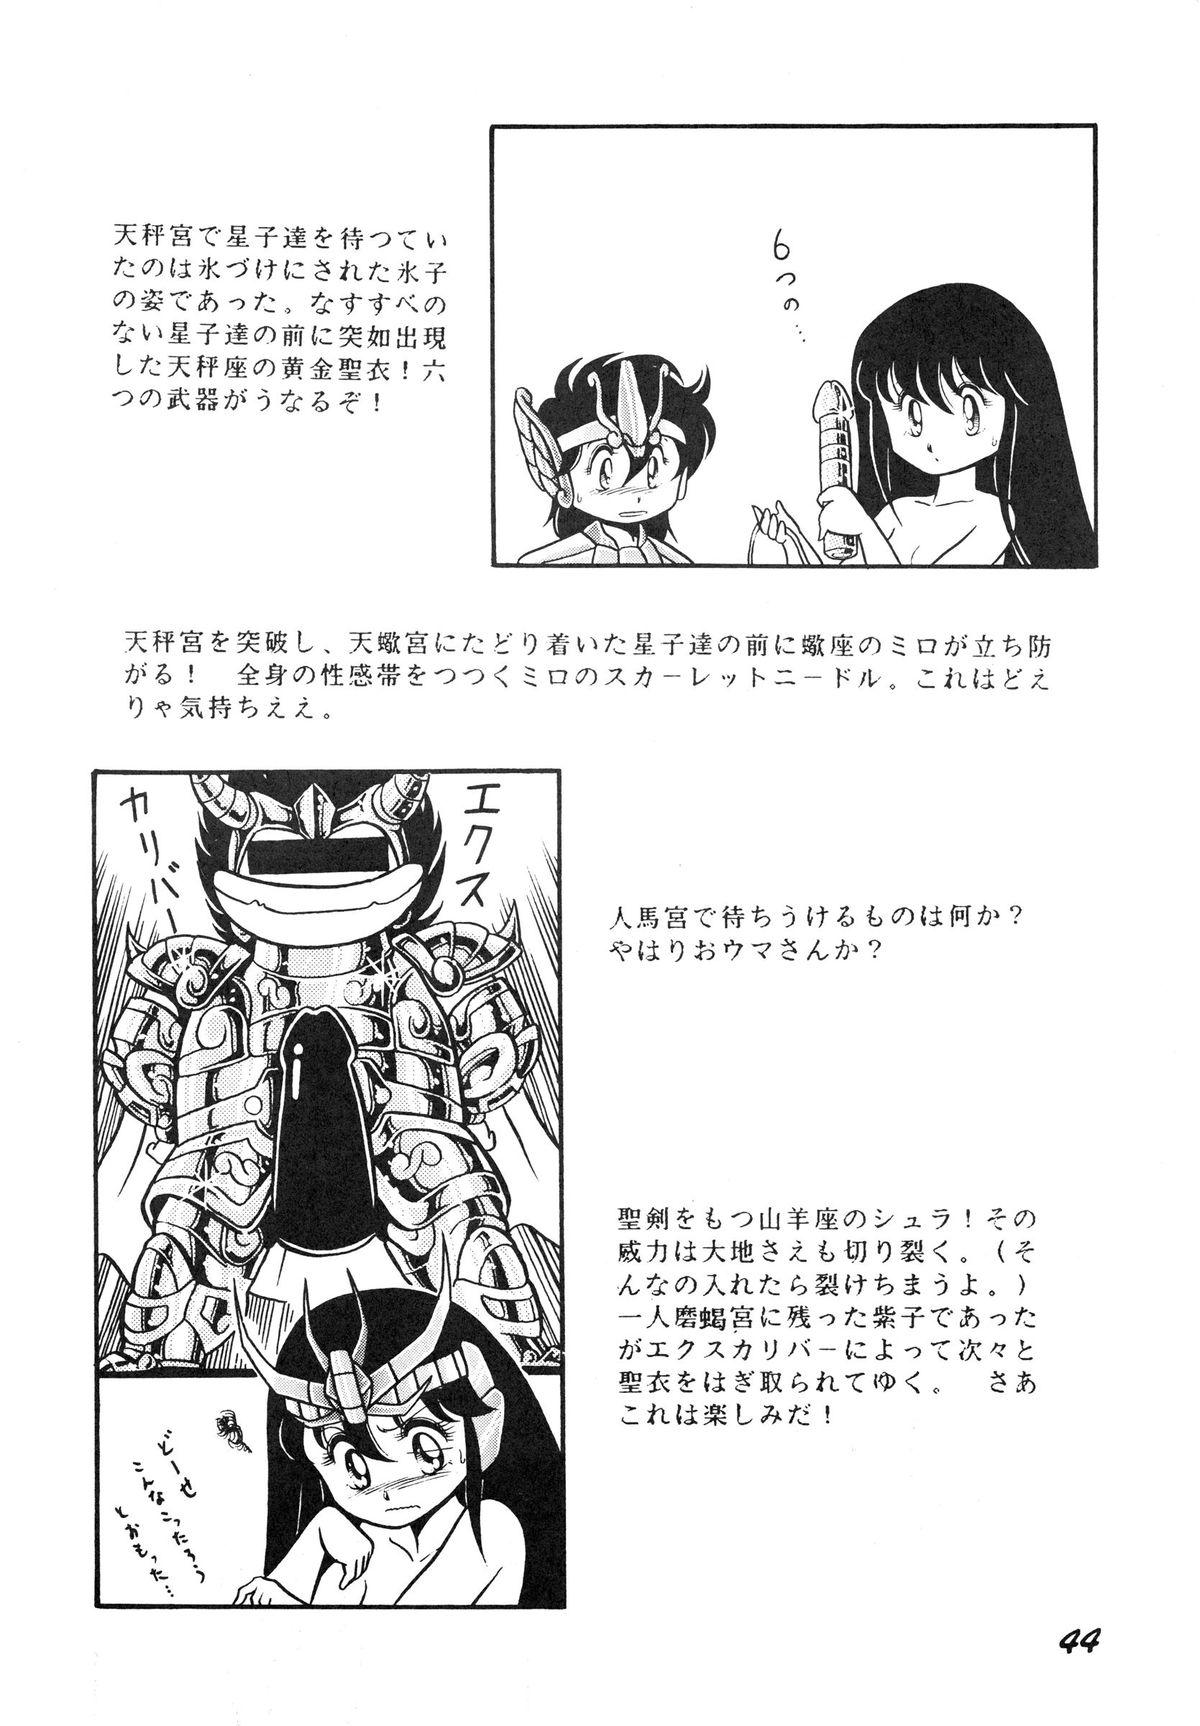 Saint Seiko Vol. 1 Juuni Shikyuu Densetsu no Maki 43